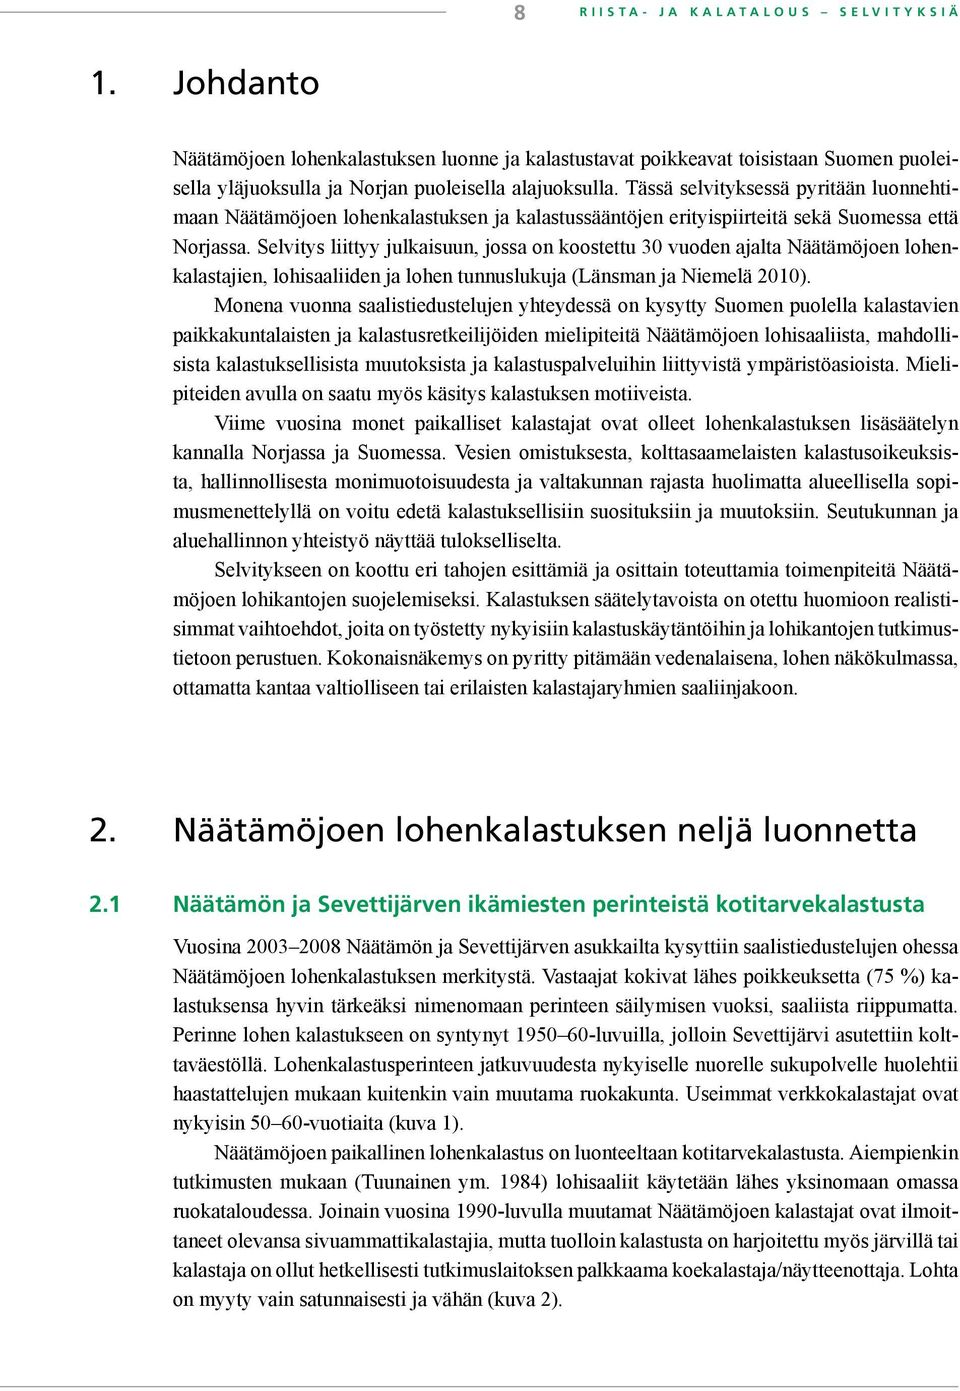 Selvitys liittyy julkaisuun, jossa on koostettu 30 vuoden ajalta Näätämöjoen lohenkalastajien, lohisaaliiden ja lohen tunnuslukuja (Länsman ja Niemelä 2010).